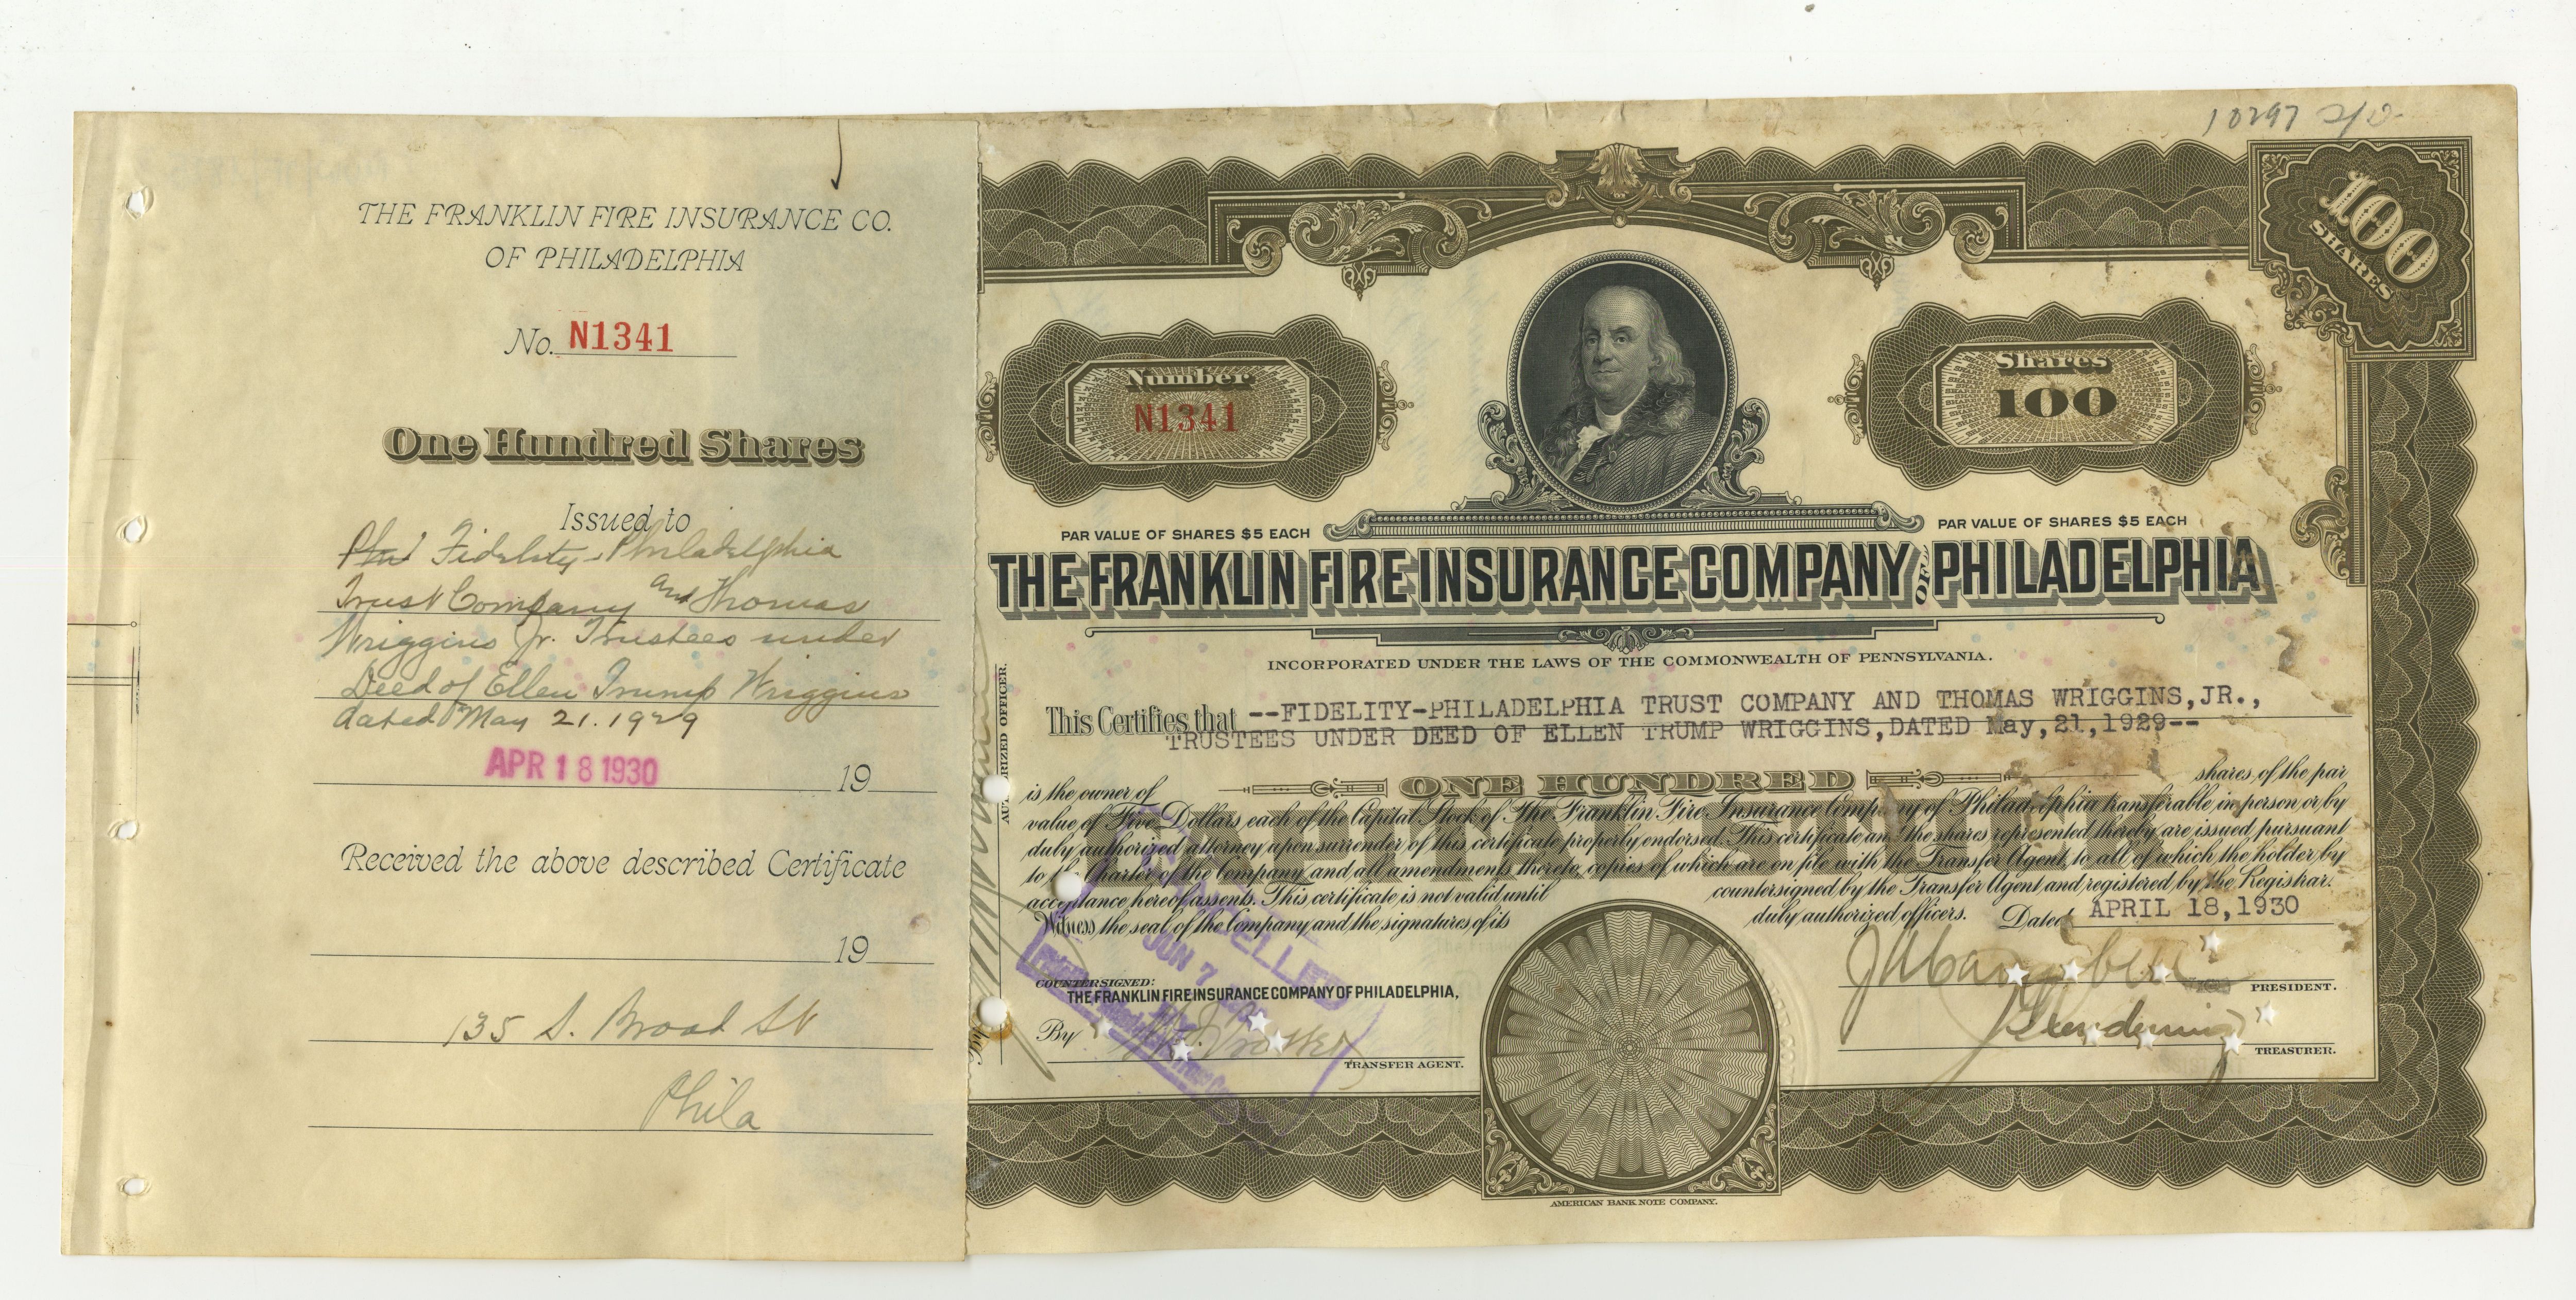 100 akcji The Franklin Fire Insurance Company of Philadelphia z 18 kwietnia 1930 roku.